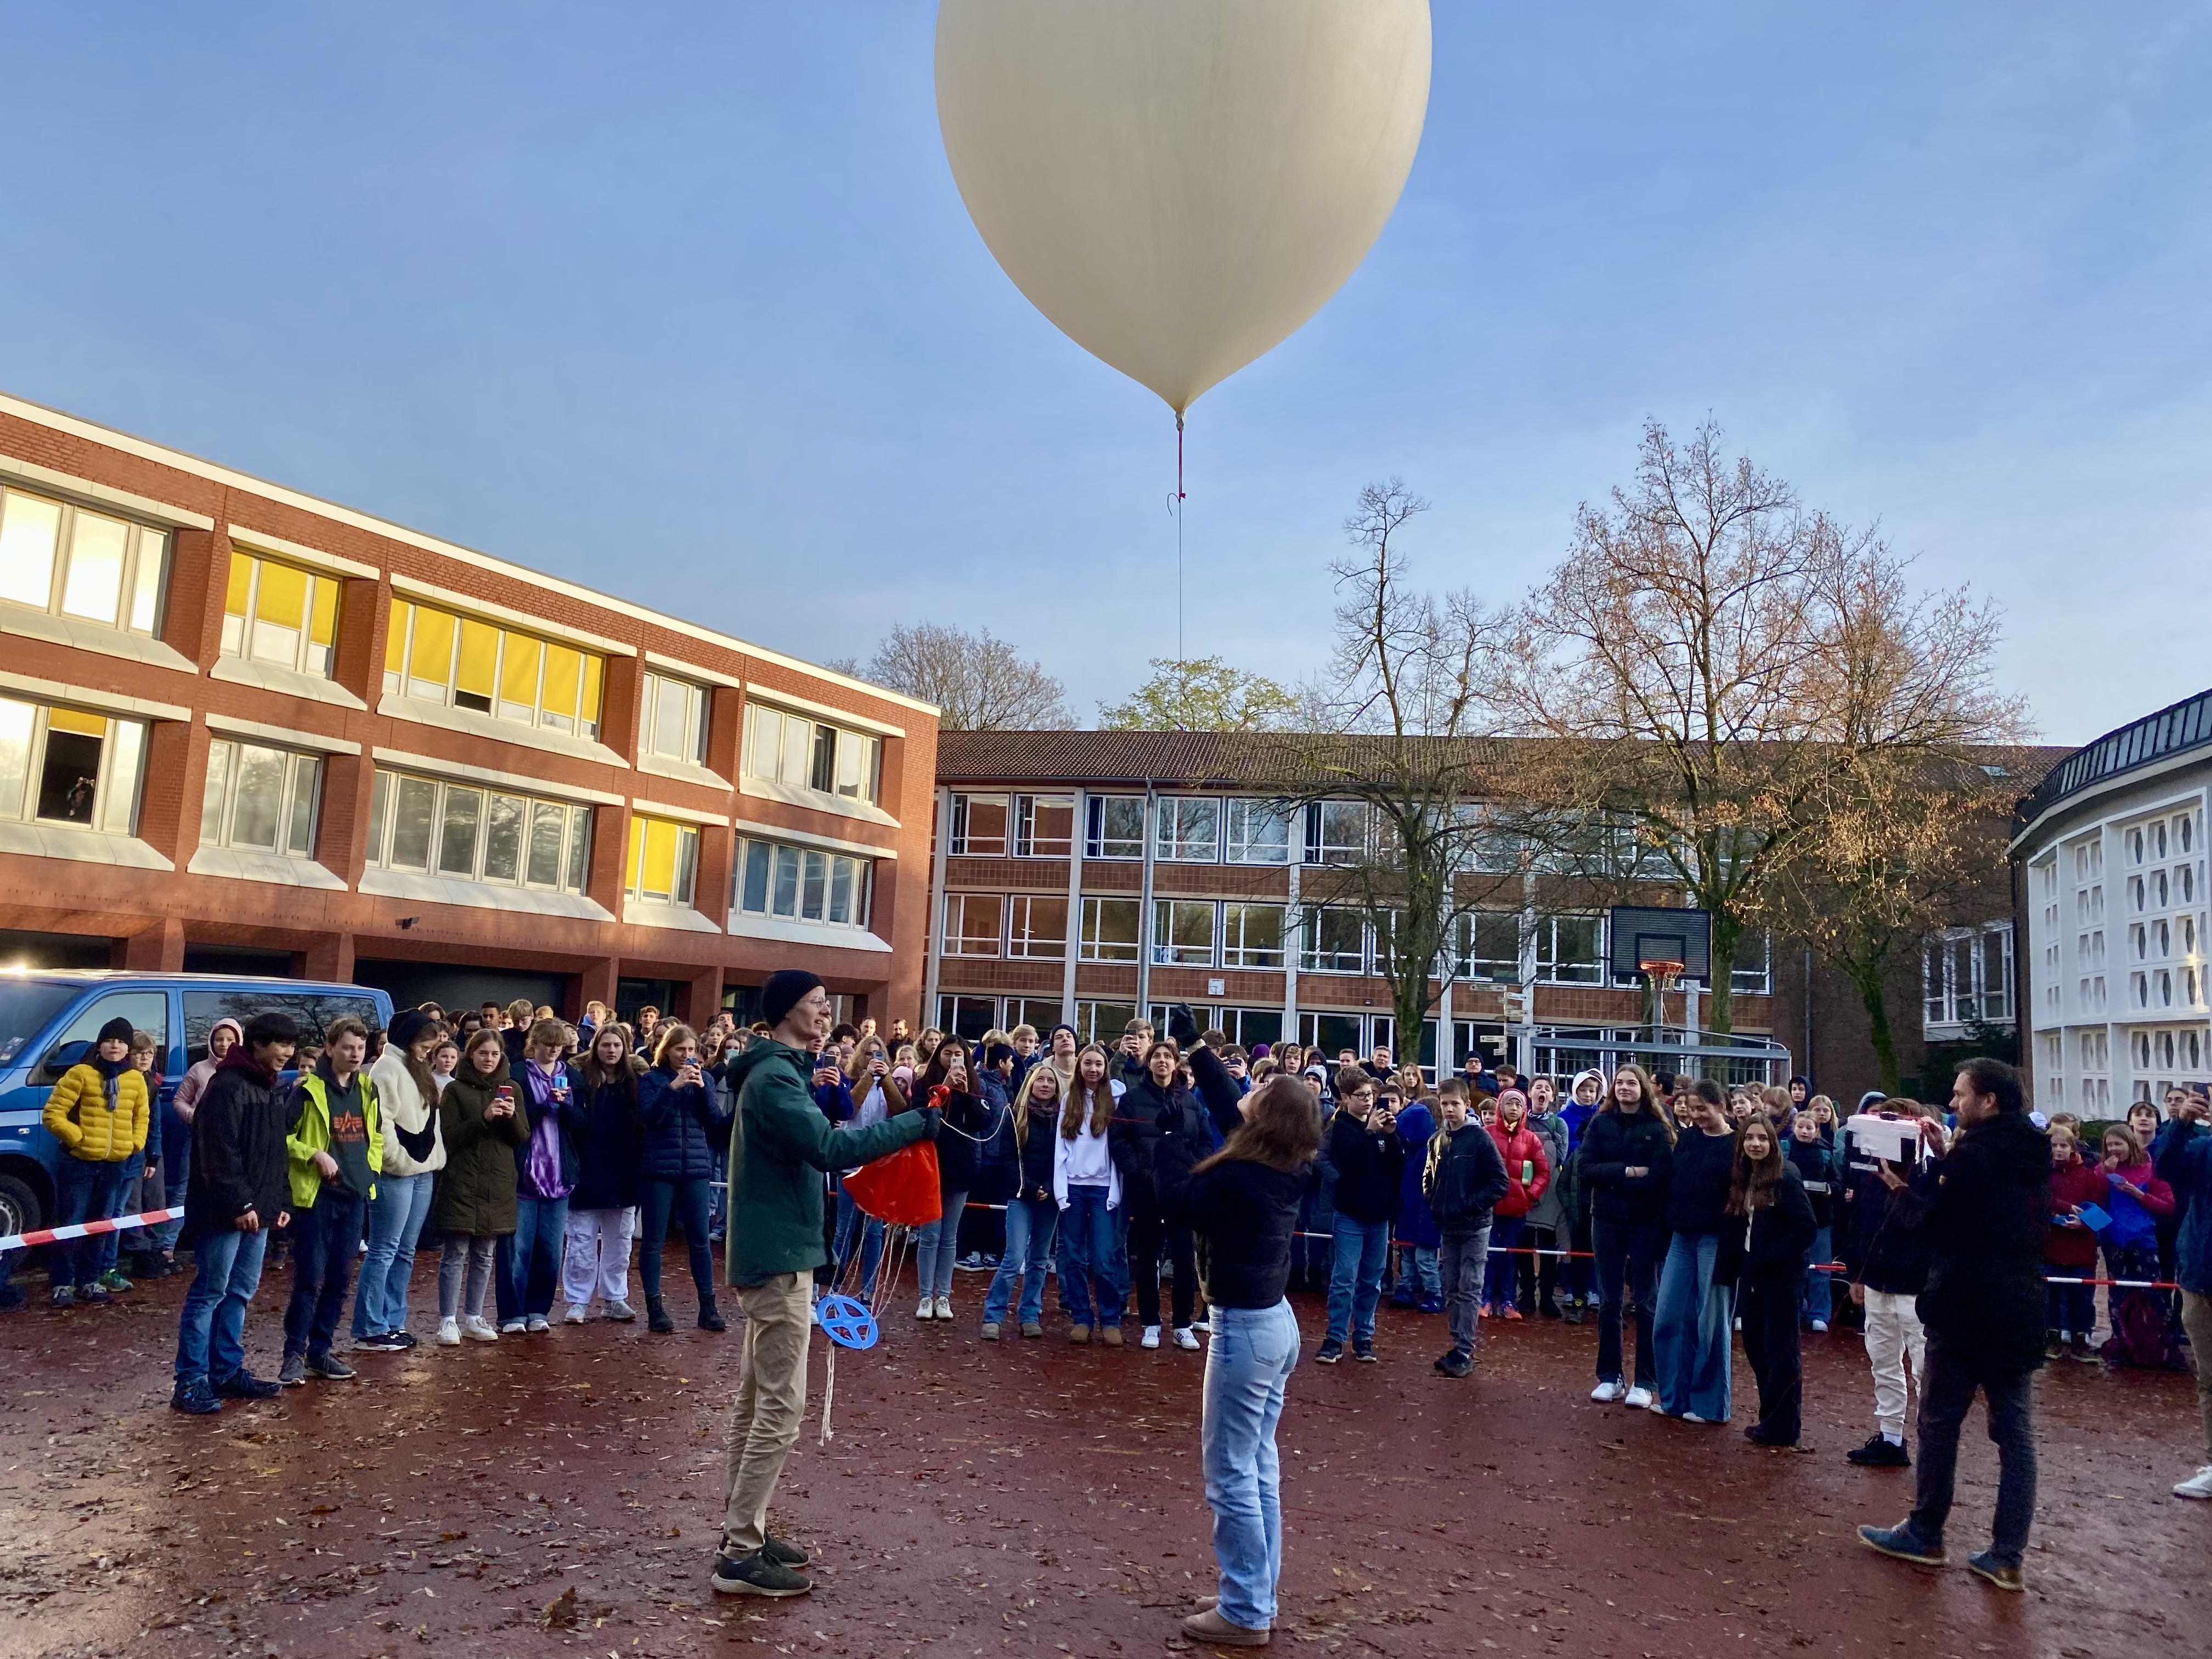 Schülerinnen und Schüler stehen kurz vor dem Start um den Ballon mit der daran hängenden Experimentbox auf dem Schulhof